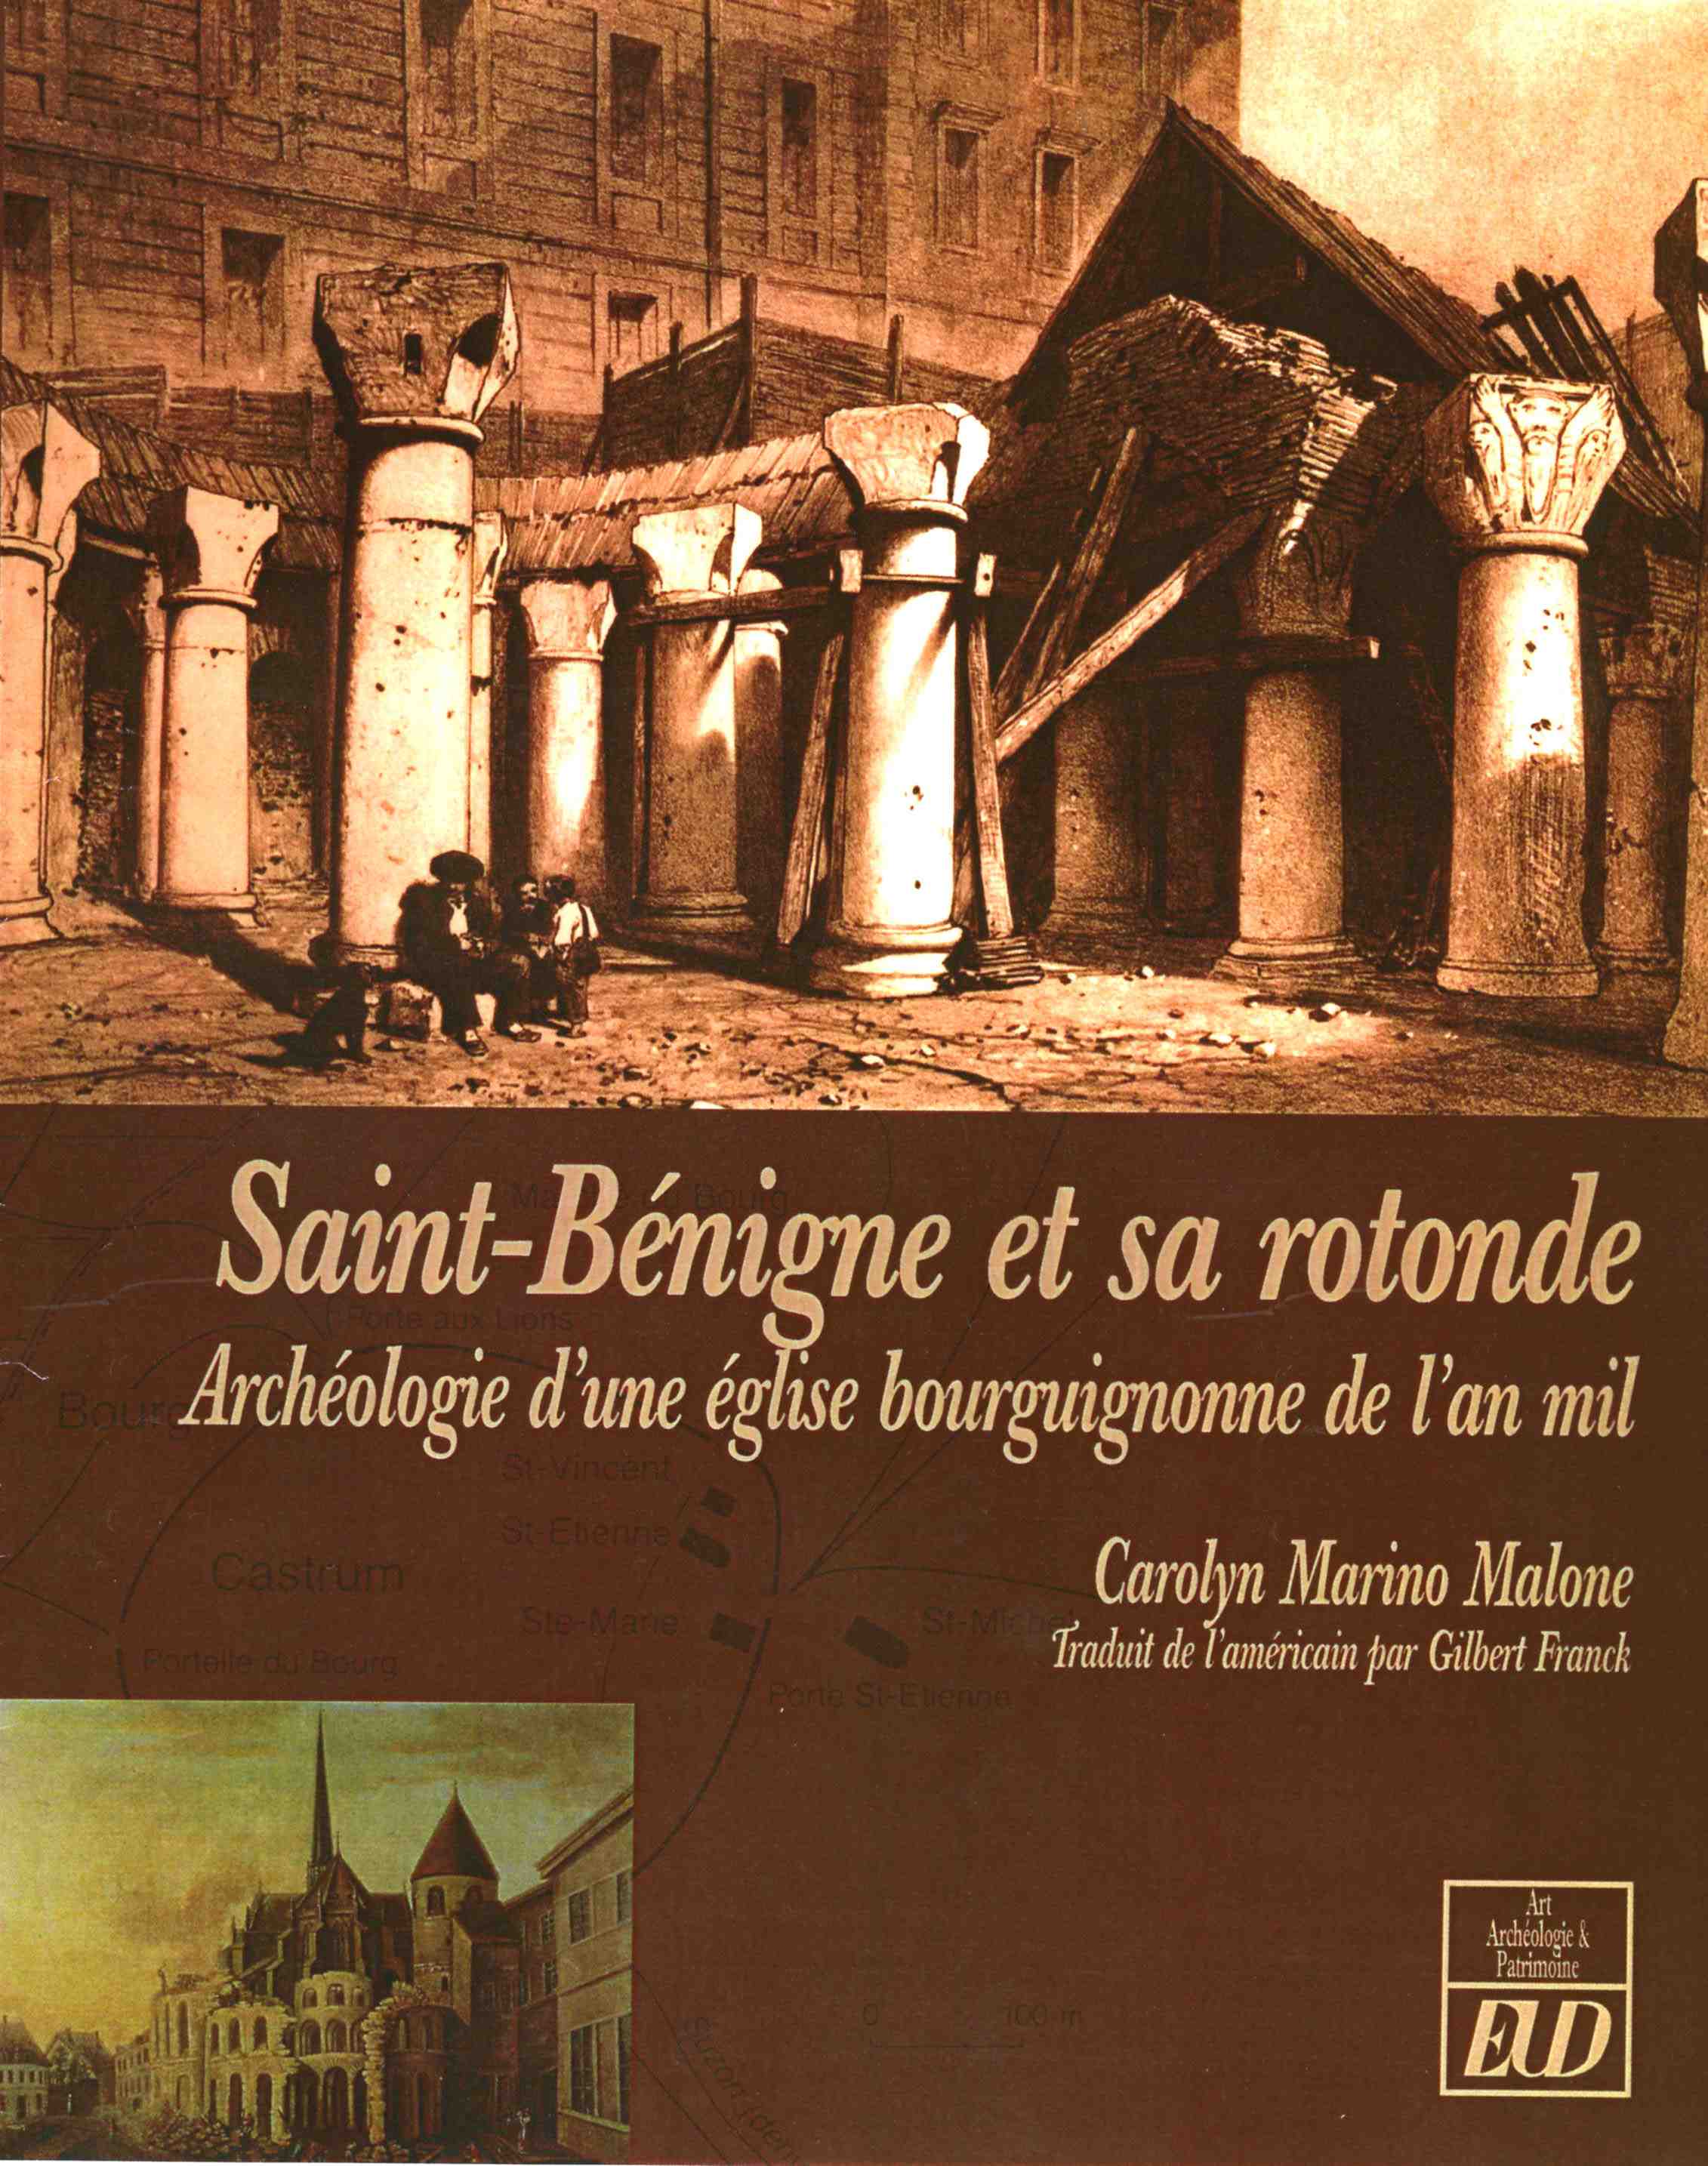 Saint-Benigne et sa rotonde. Archéologie d'une église bourguignonne de l'an mil, 2008, 350 p., ill. n.b. et coul.